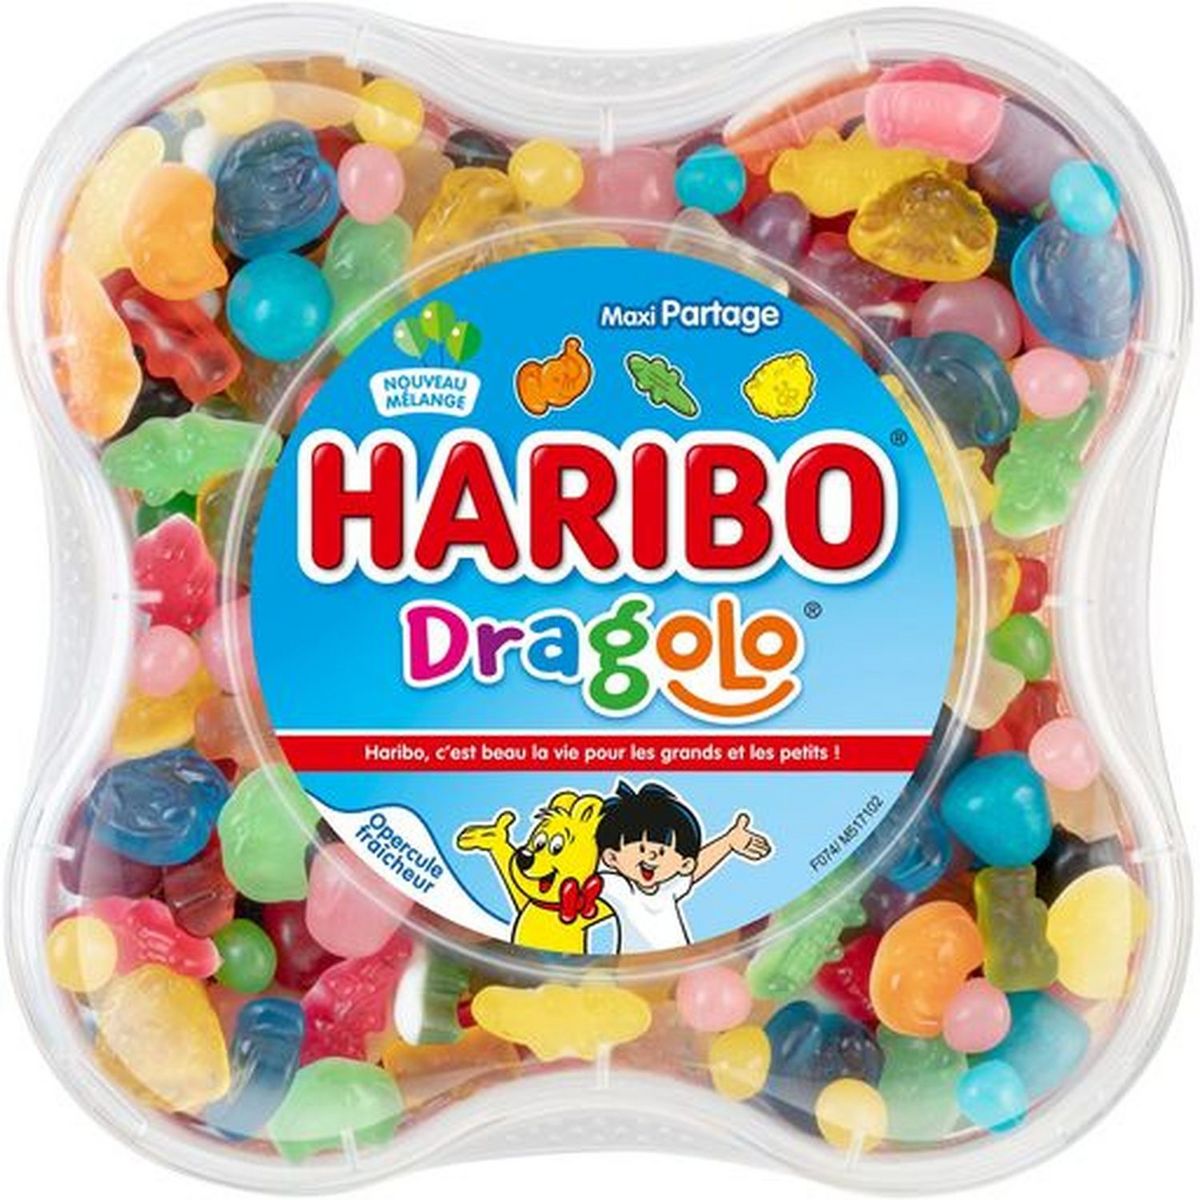 Haribo Dragolo Candy Set 750g